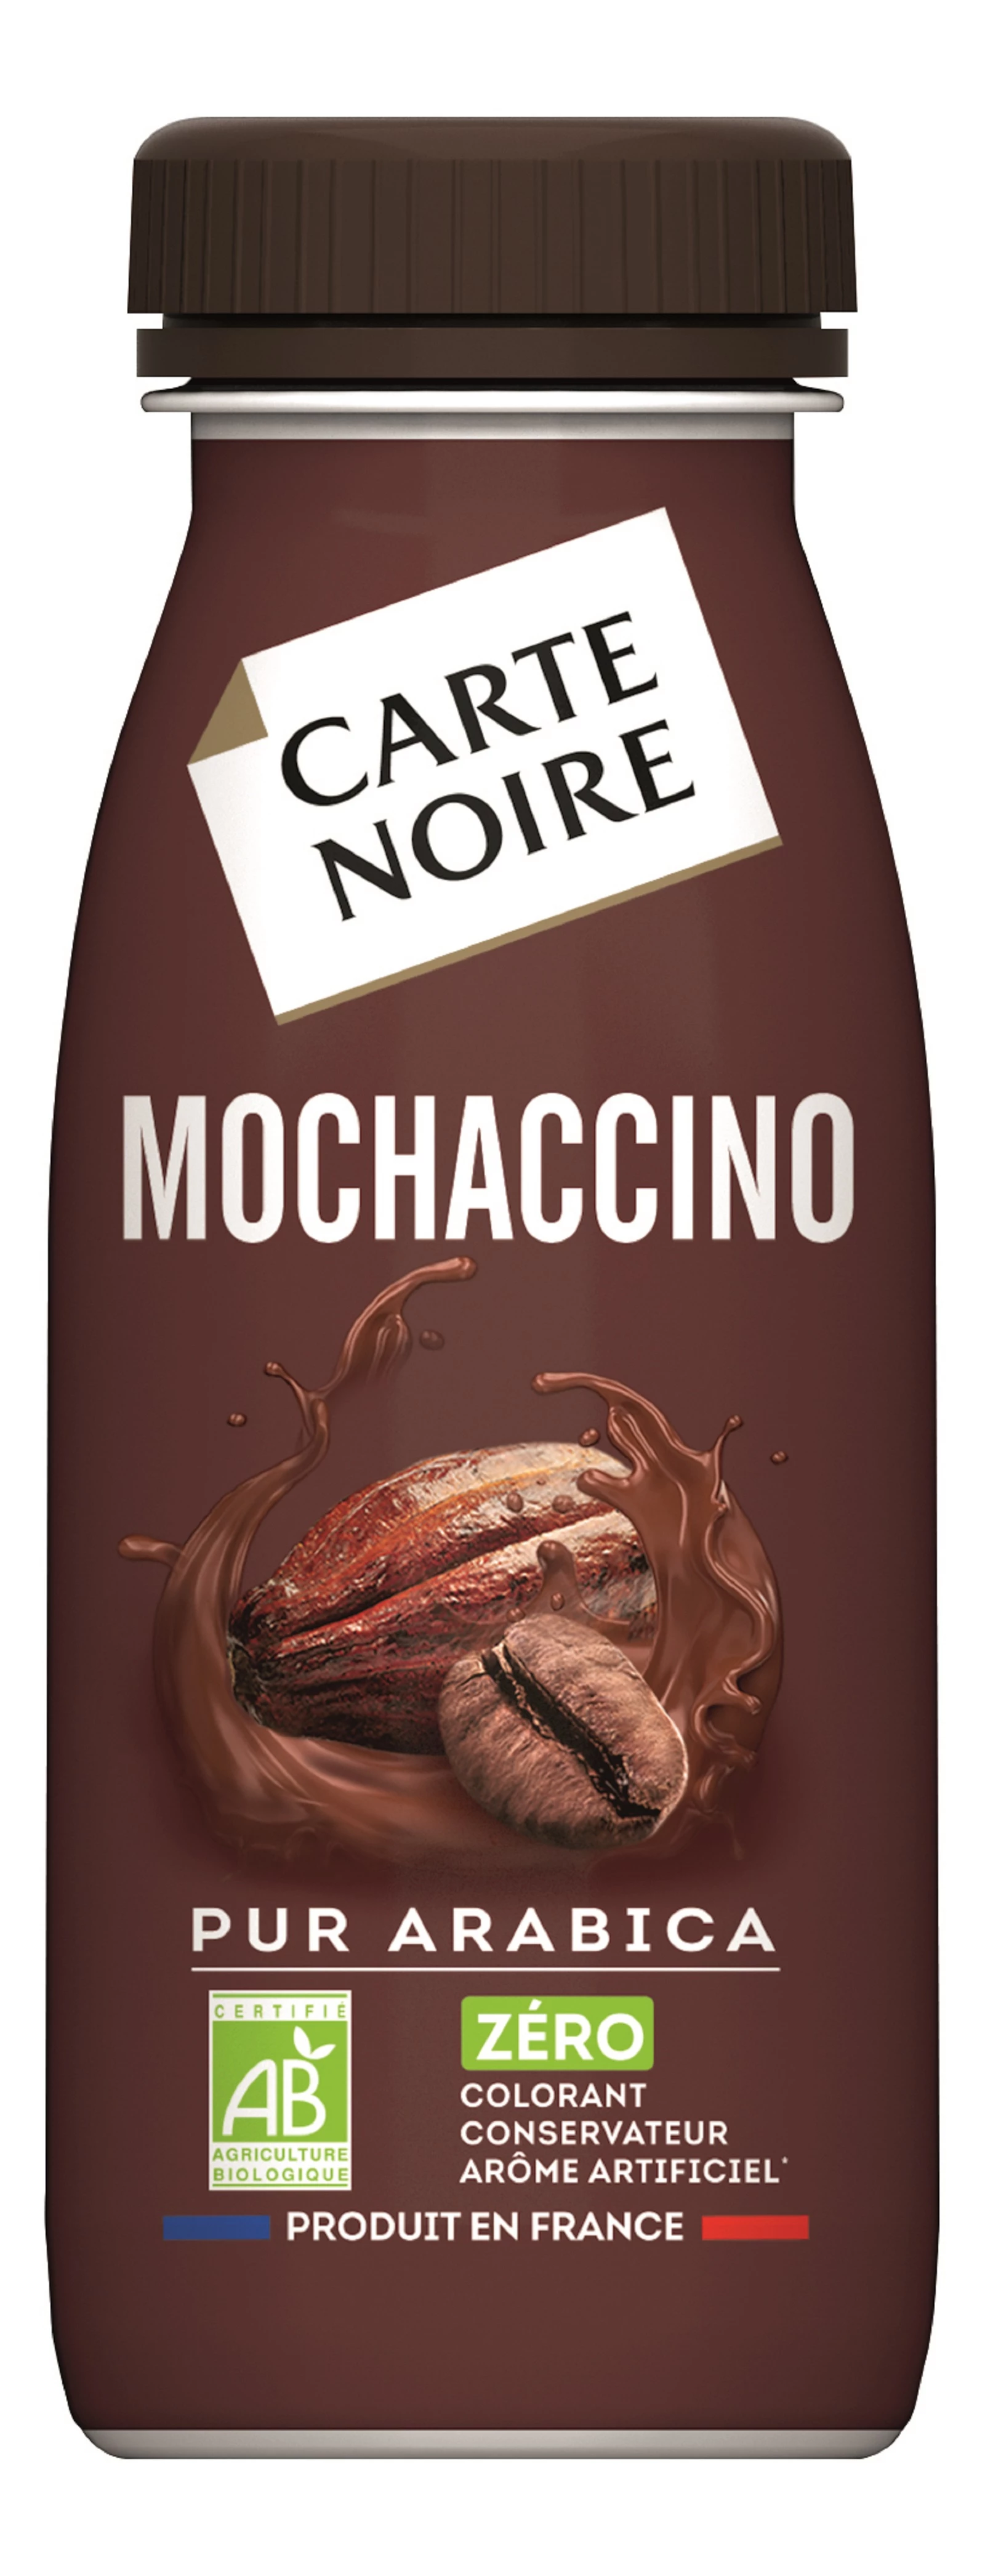 Органический кофейный напиток Мокаччино 25кл. - CARTE NOIRE